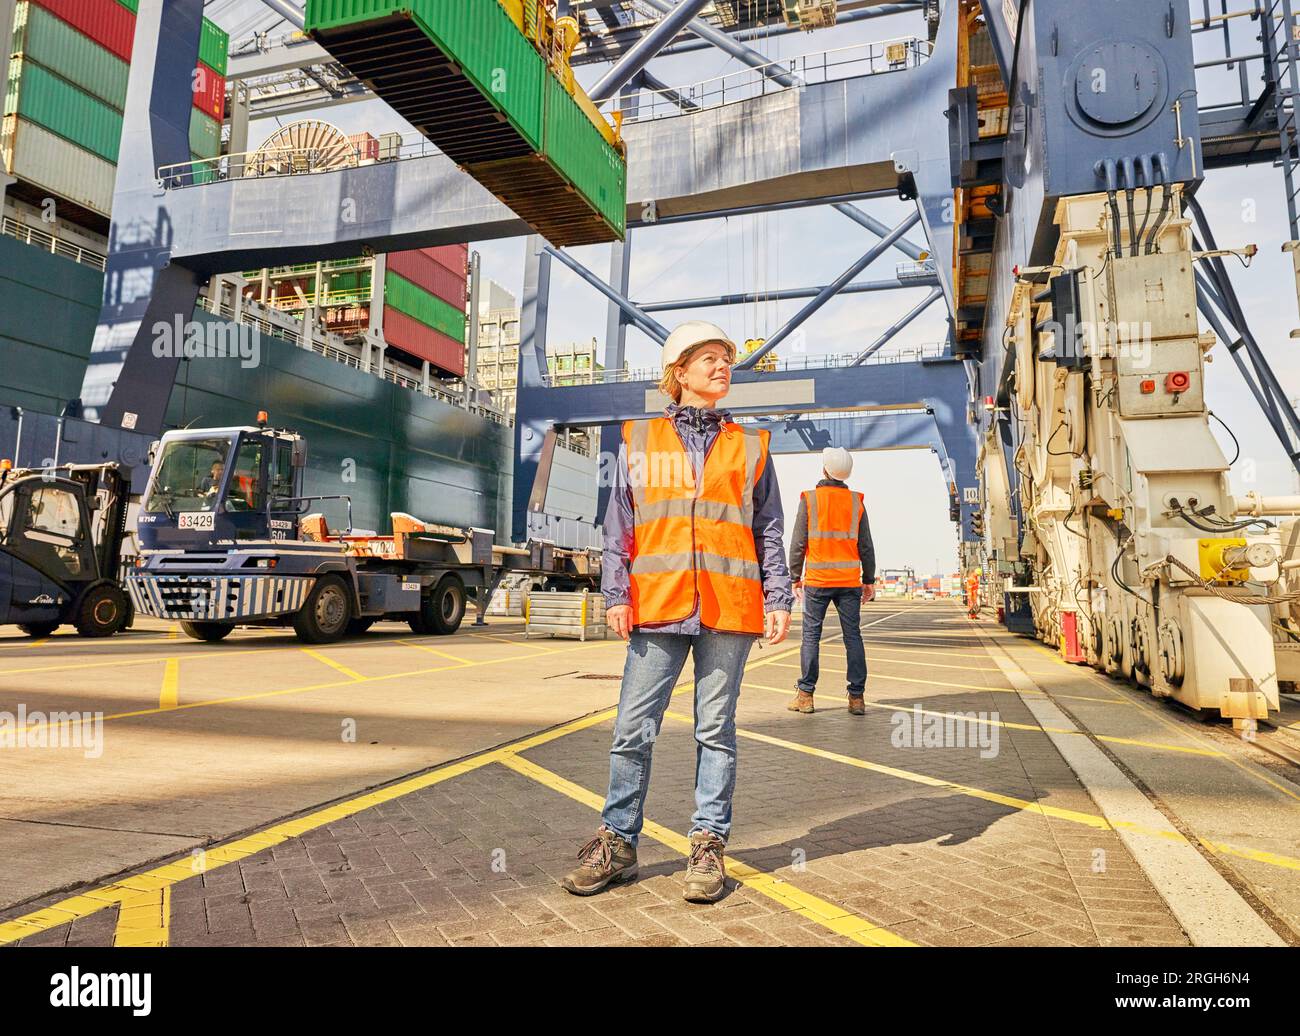 Dock worker in reflective vest beneath crane Stock Photo